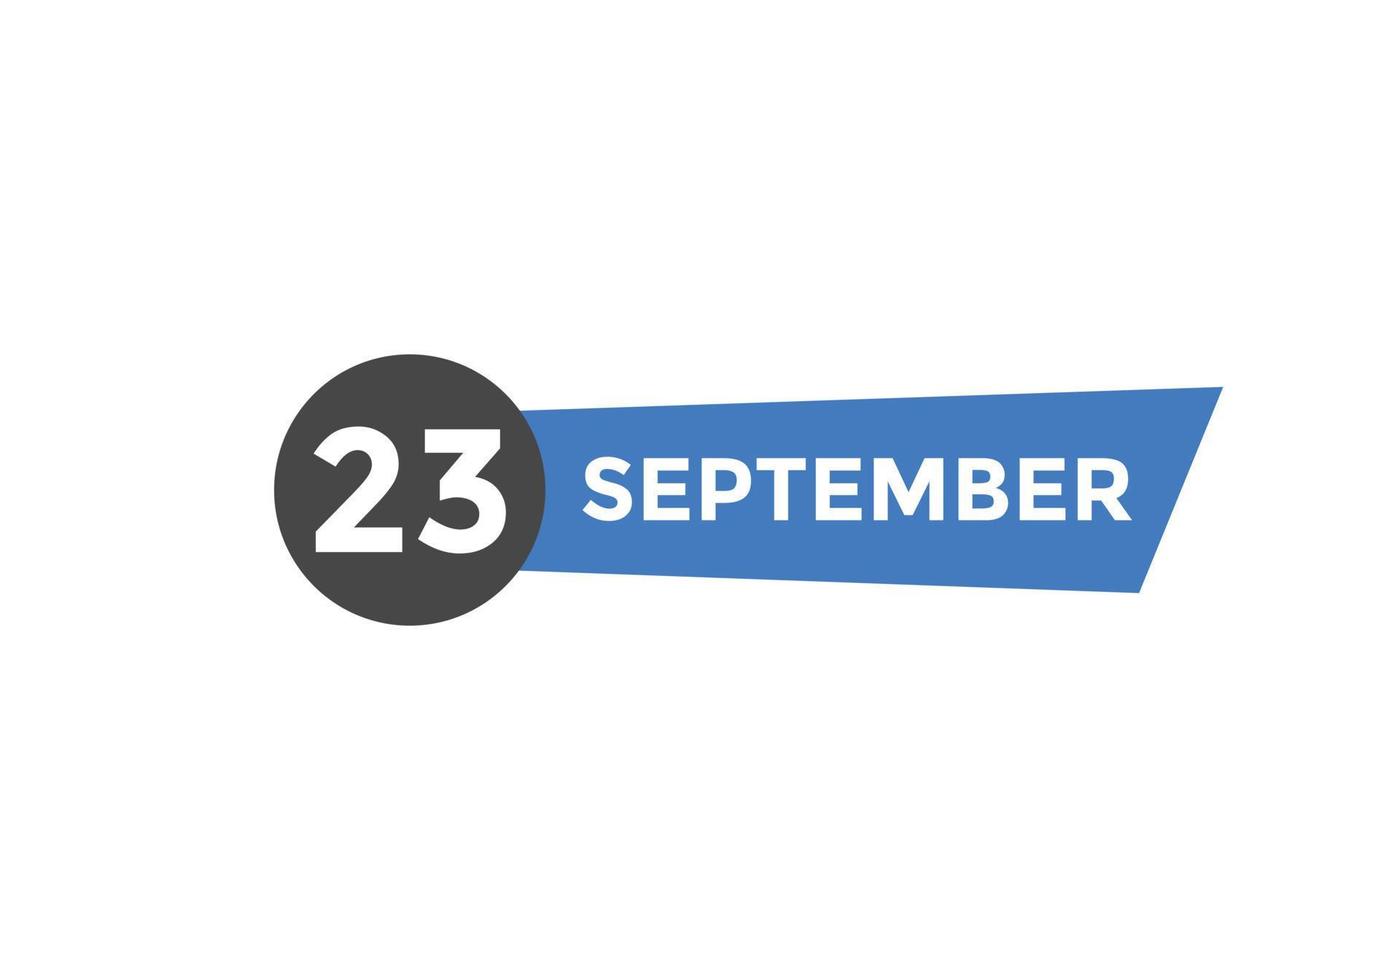 september 23 kalender påminnelse. 23: e september dagligen kalender ikon mall. kalender 23: e september ikon design mall. vektor illustration